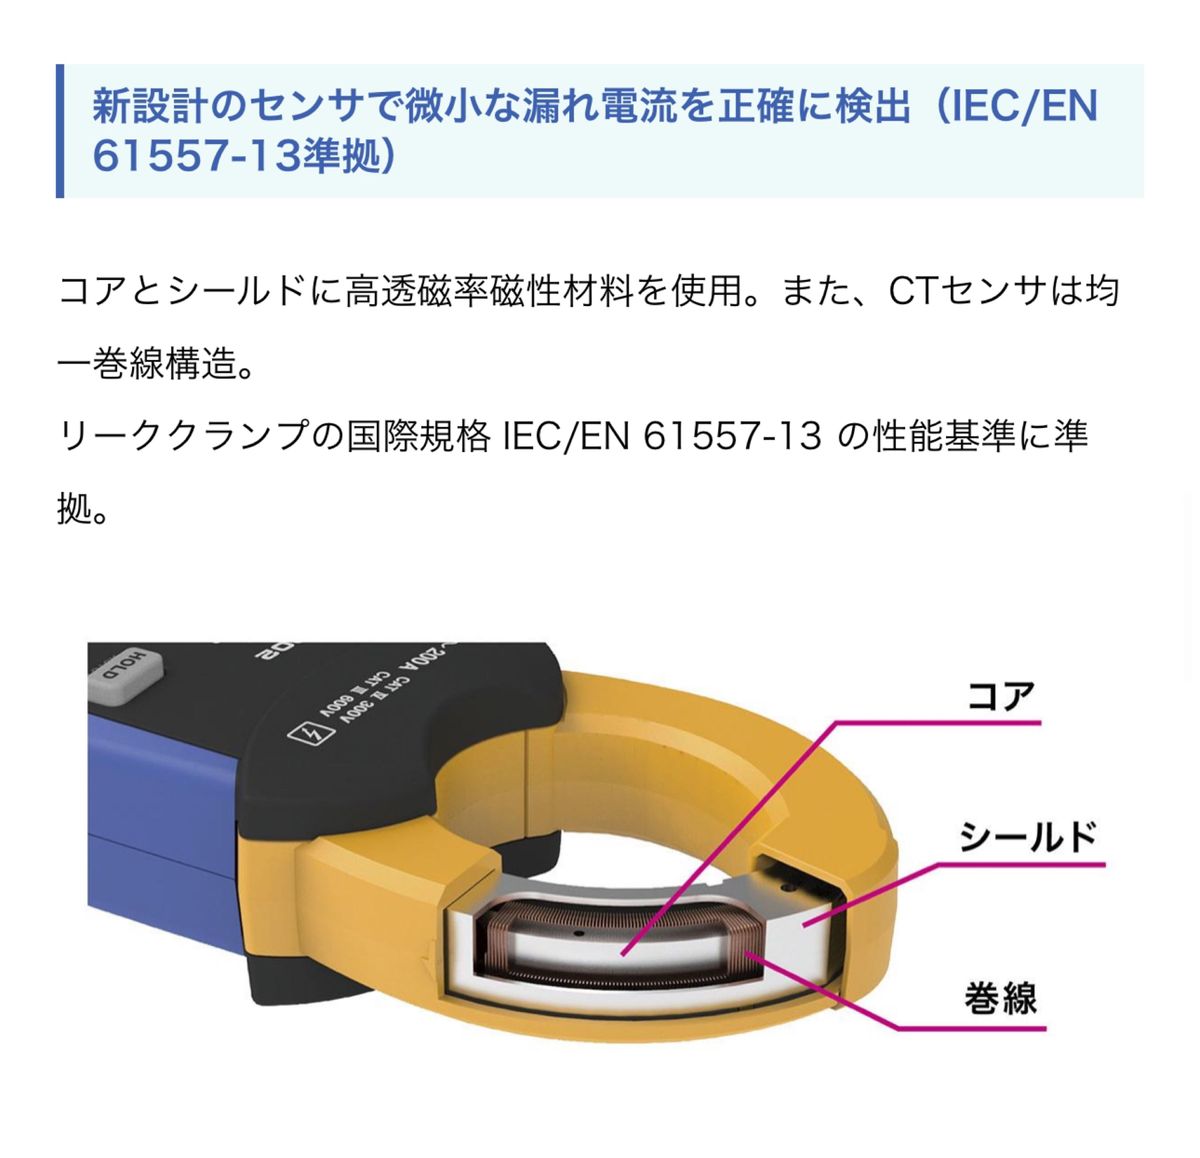 【新品未使用】HIOKI CM4003 電流クランプメーター 2台 【cowcow様専用】